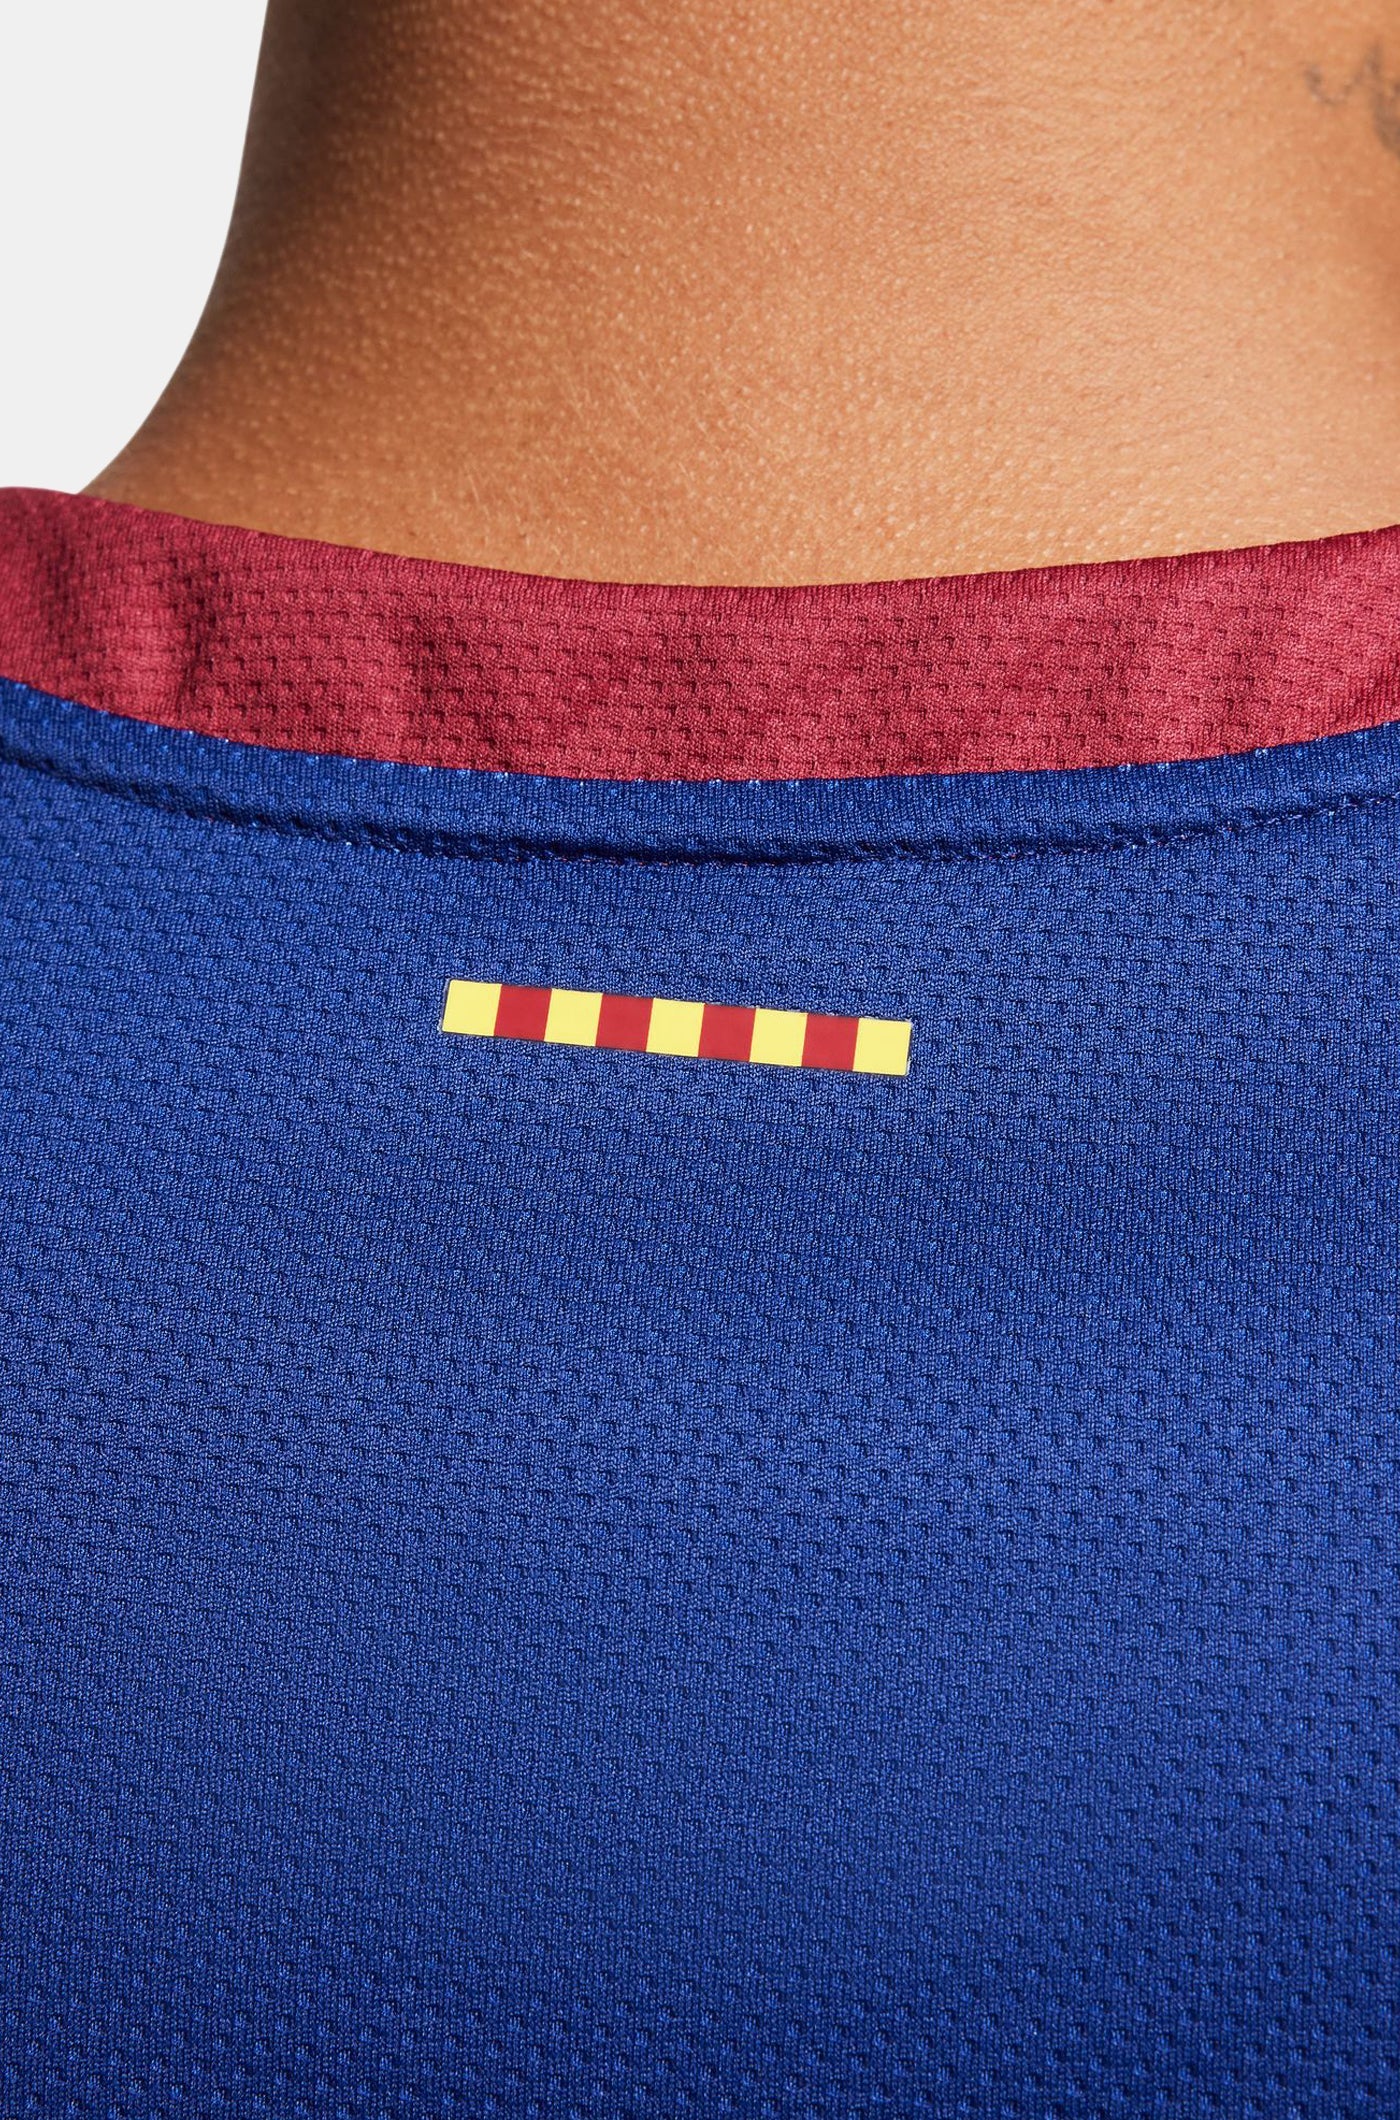 Euroleague FC Barcelona home basketball shirt 23/24 - PARKER